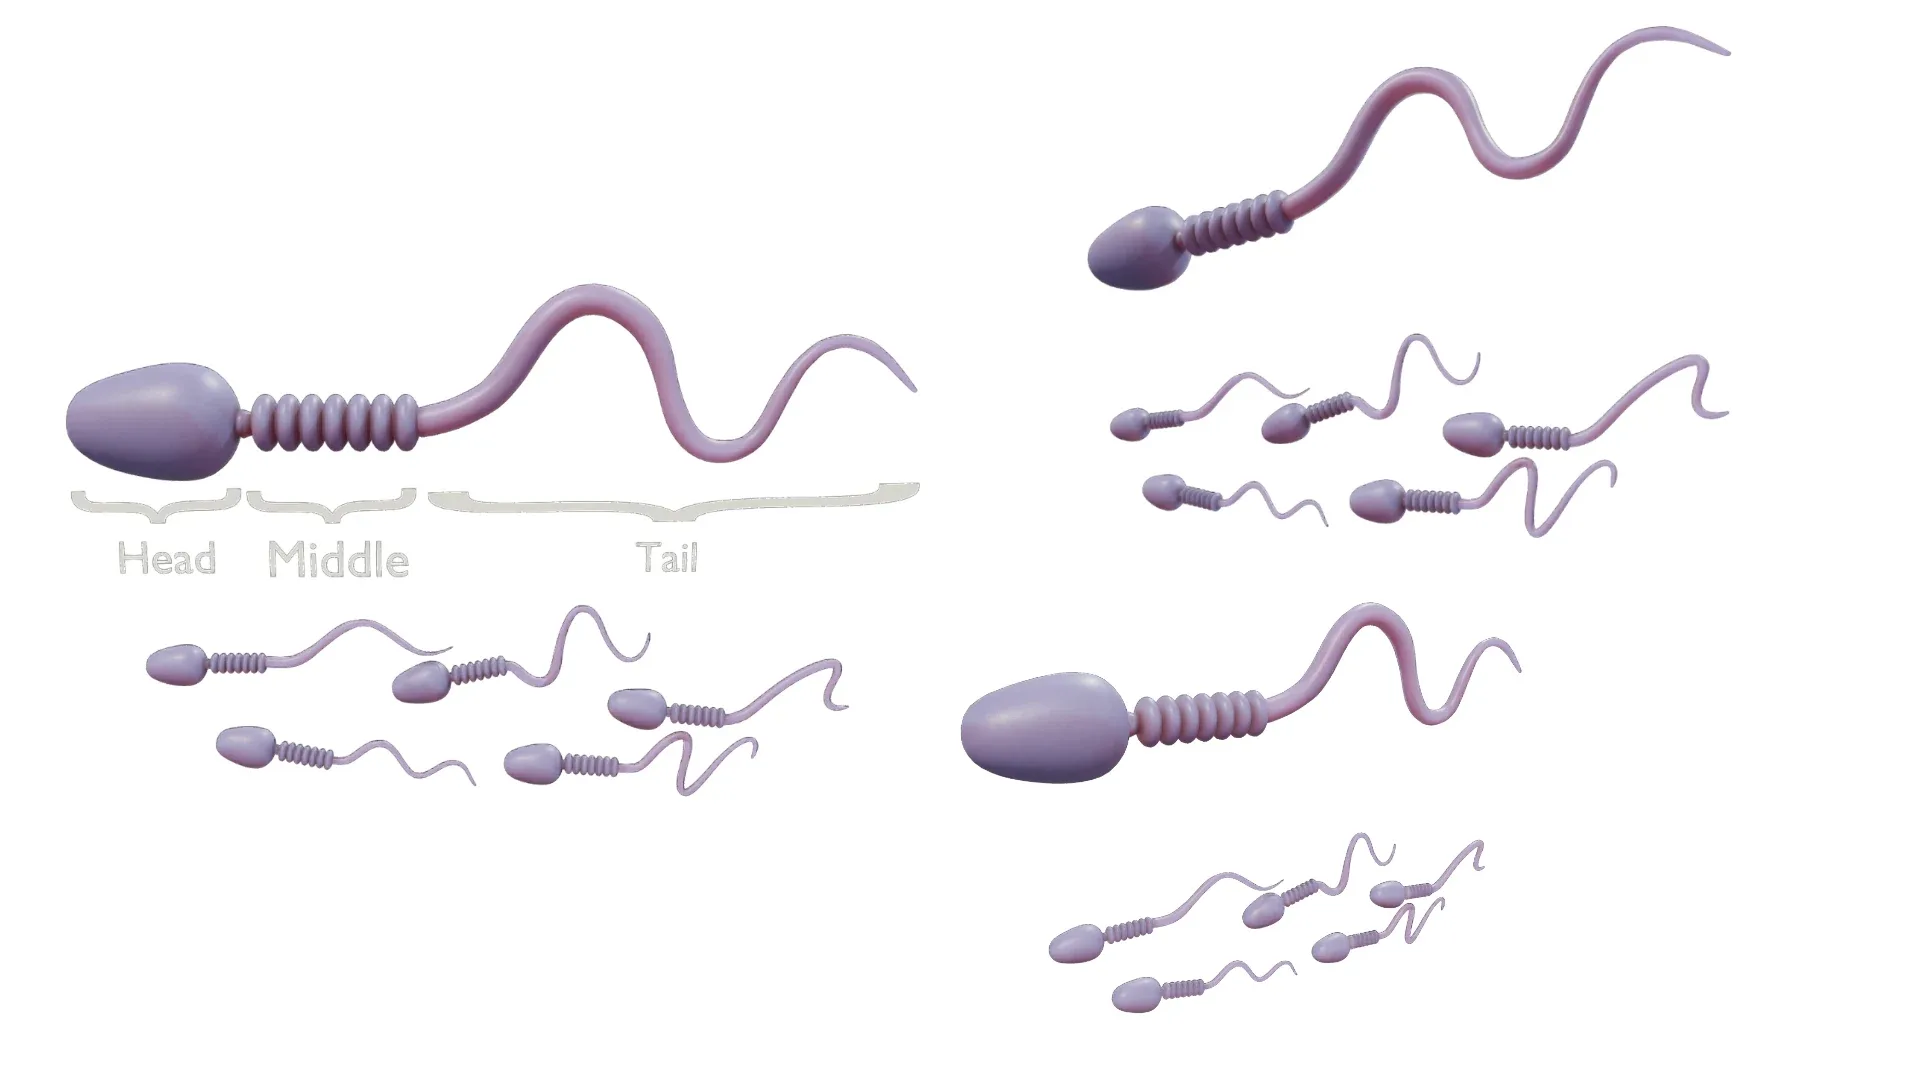 Sperm Cell Anatomy